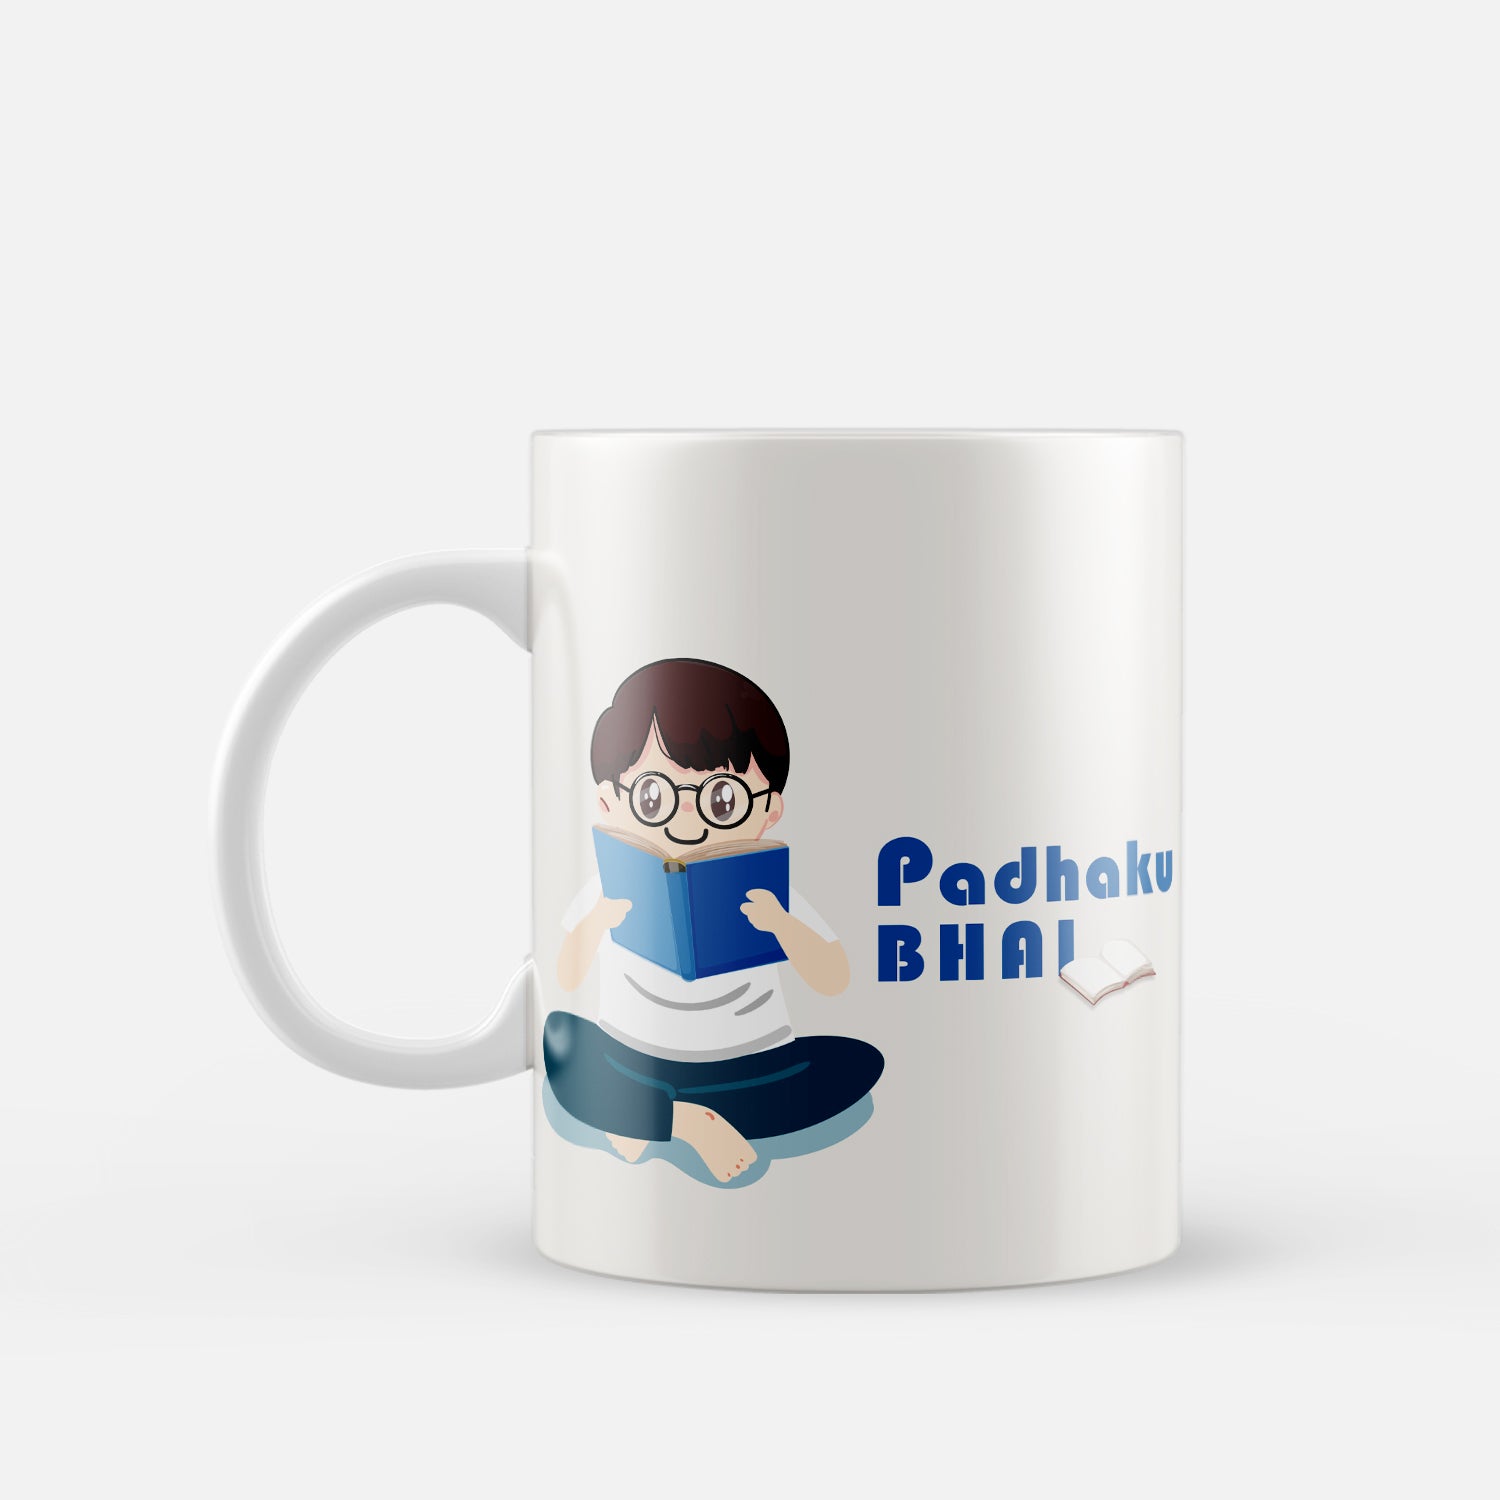 "Padhaku Bhai" Brother Ceramic Coffee/Tea Mug 2